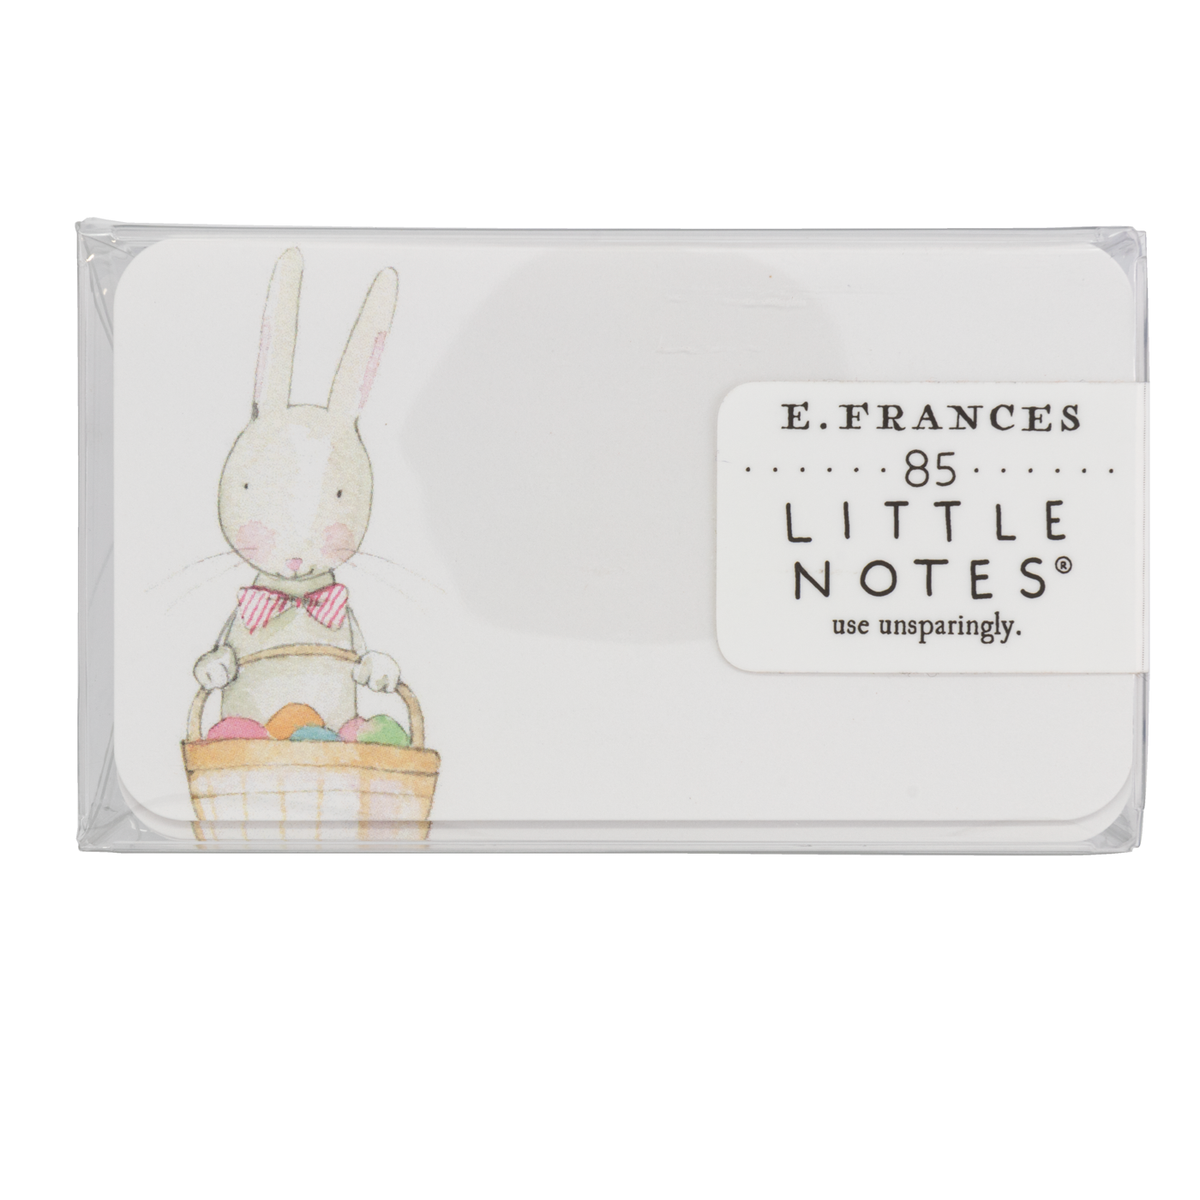 E. Frances Little Notes - Peter Rabbit